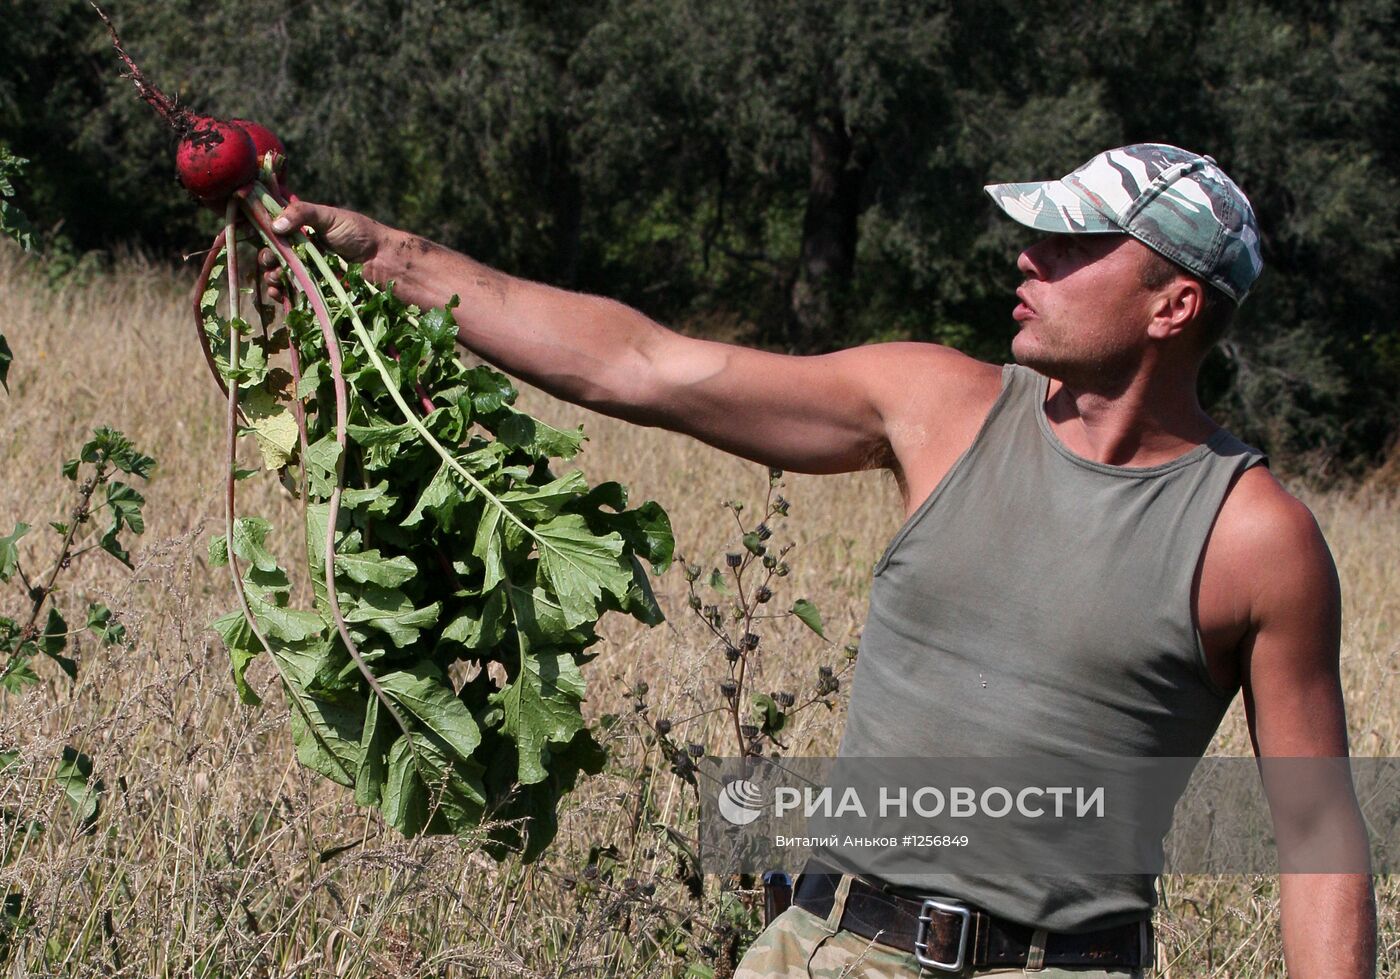 Повседневная жизнь фермерского хозяйства Приморского края